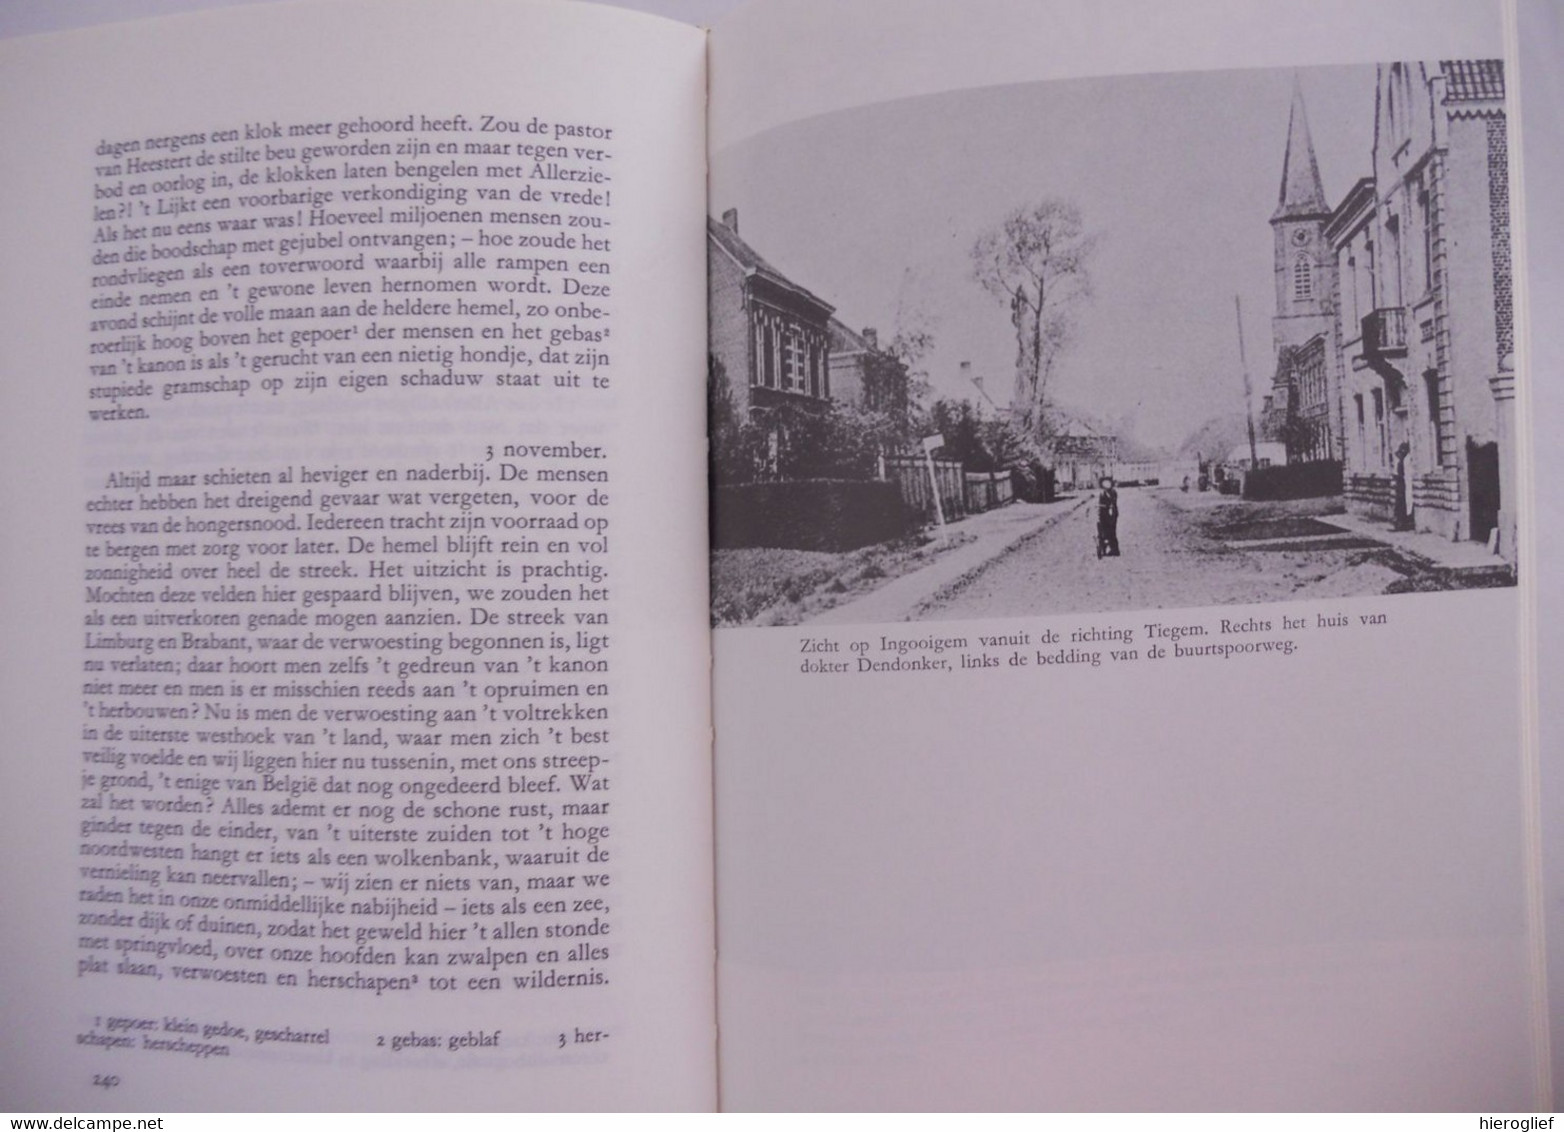 IN OORLOGSTIJD het volledige dagboek van de eerste wereldoorlog door Stijn Streuvels Frank Lateur Heule Ingooigem oorlog